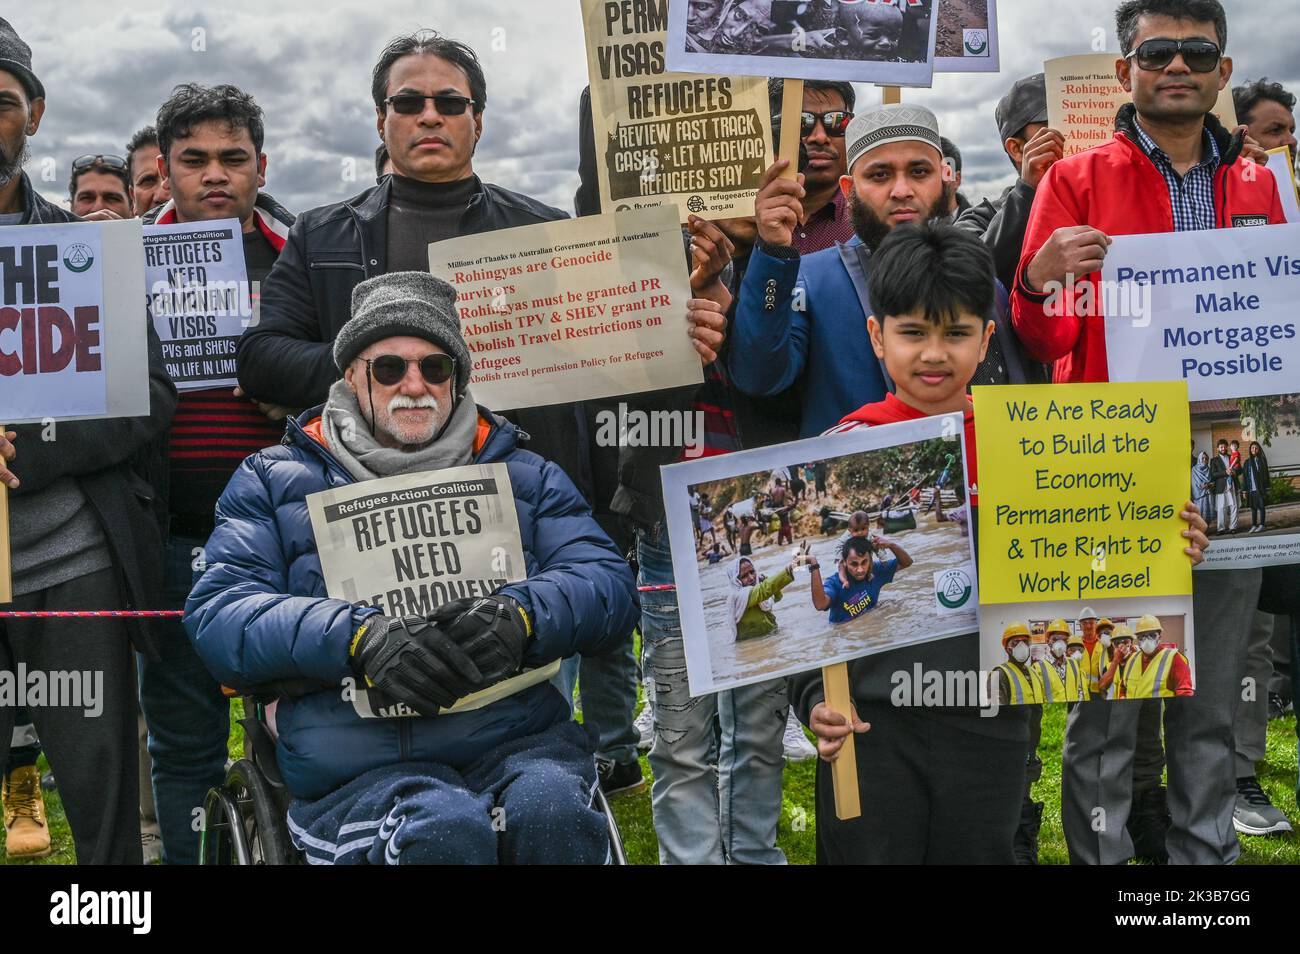 Les réfugiés sous visa temporaire protestent devant le Parlement à Canberra, en Australie, demandant une protection permanente du gouvernement travailliste. Banque D'Images